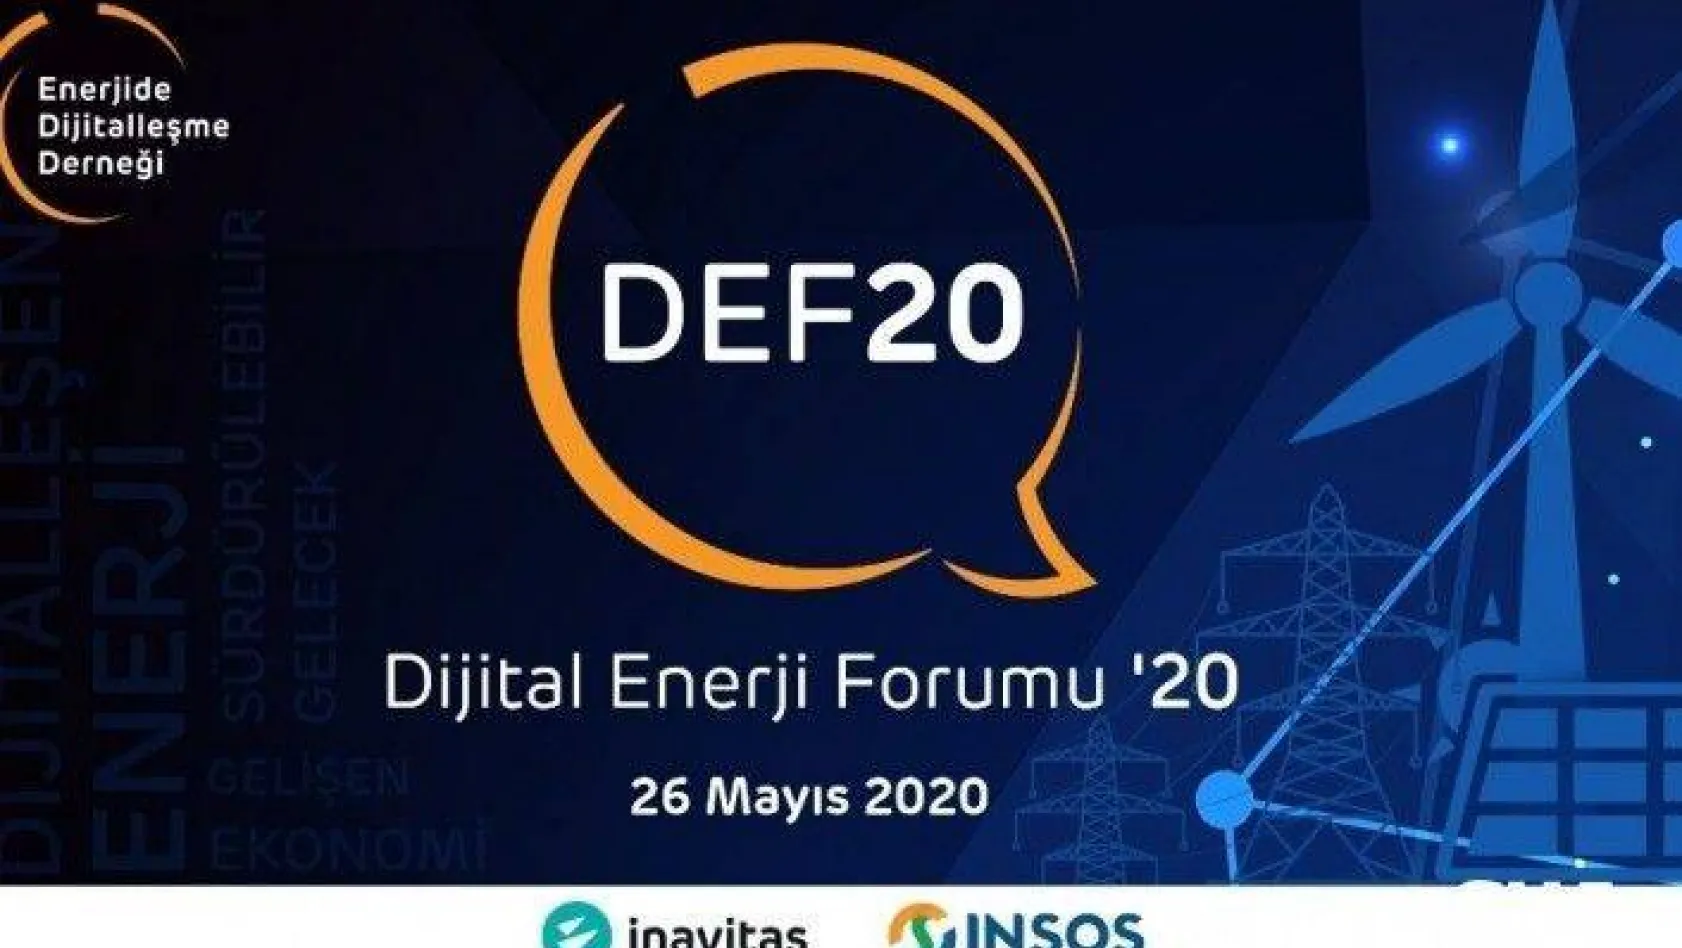 Dijital Enerji Forum '20 düzenlendi